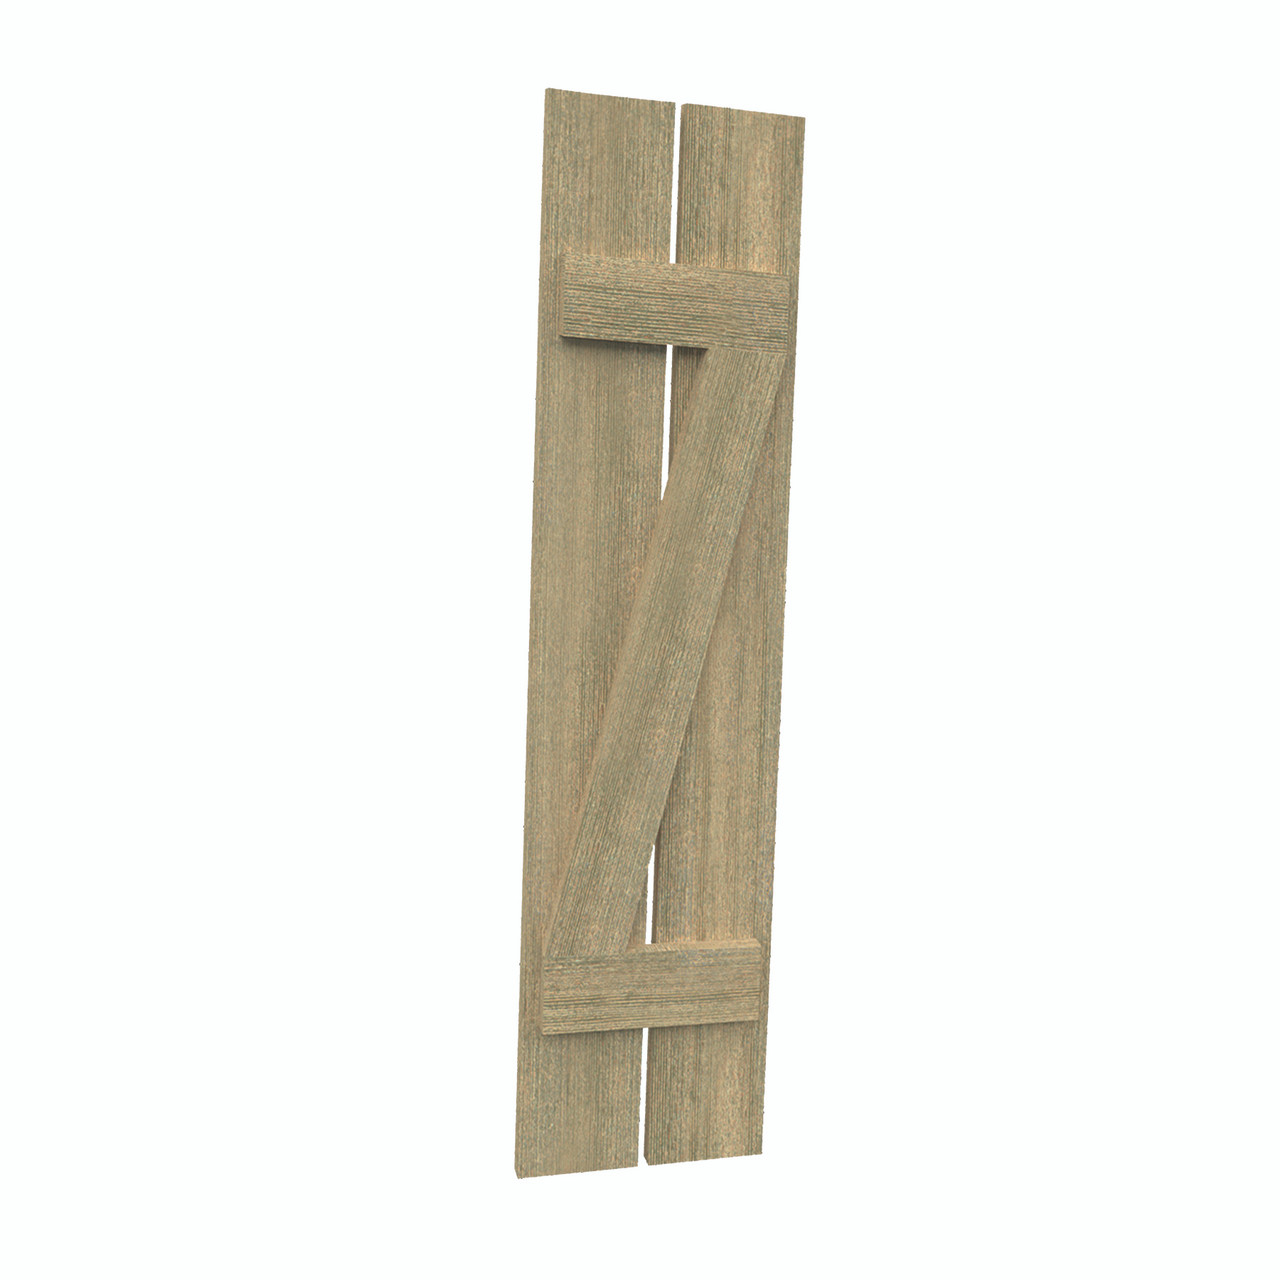 12 inch by 107 inch Plank Shutter with 2-Plank, Z-Batten